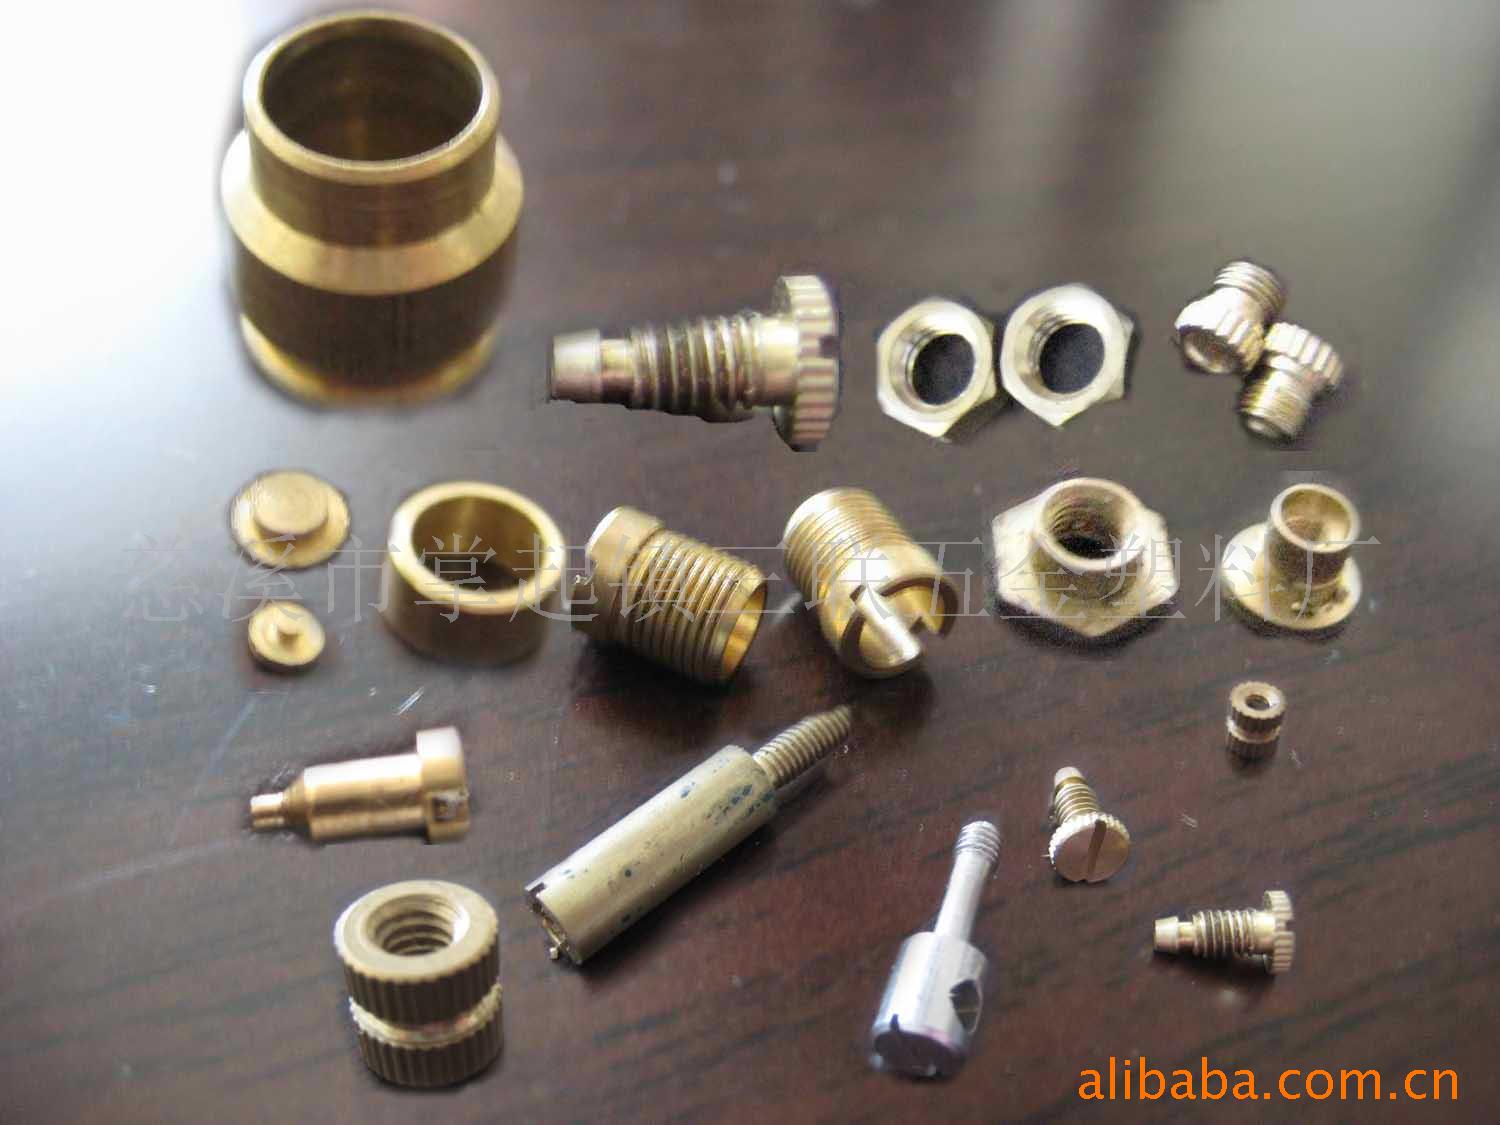 提供铜制品、铜加工、铜五金零配件、非标铜件加工信息